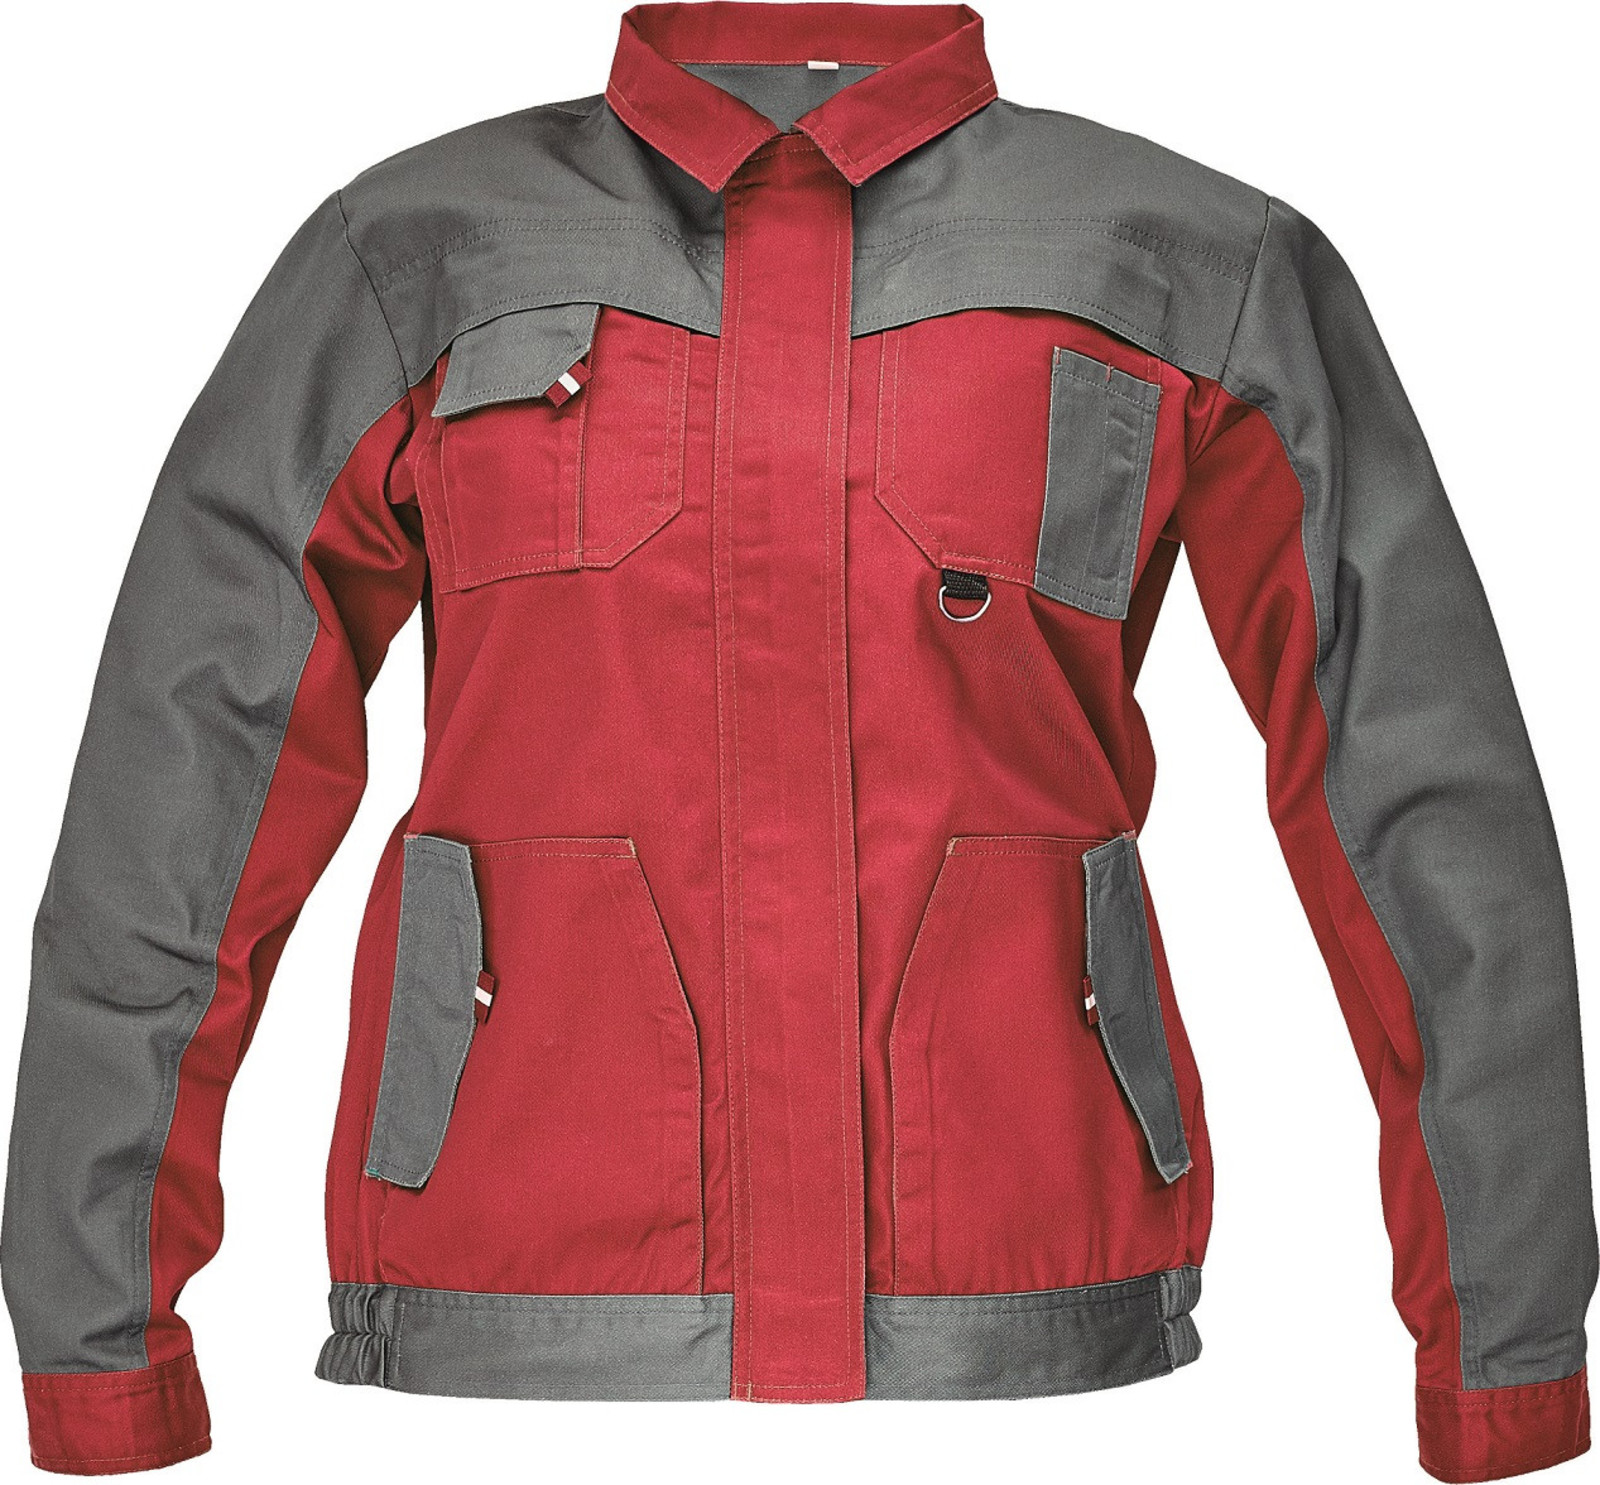 Tenká dámska montérková bunda Max Evo Lady - veľkosť: 42, farba: sivá/červená